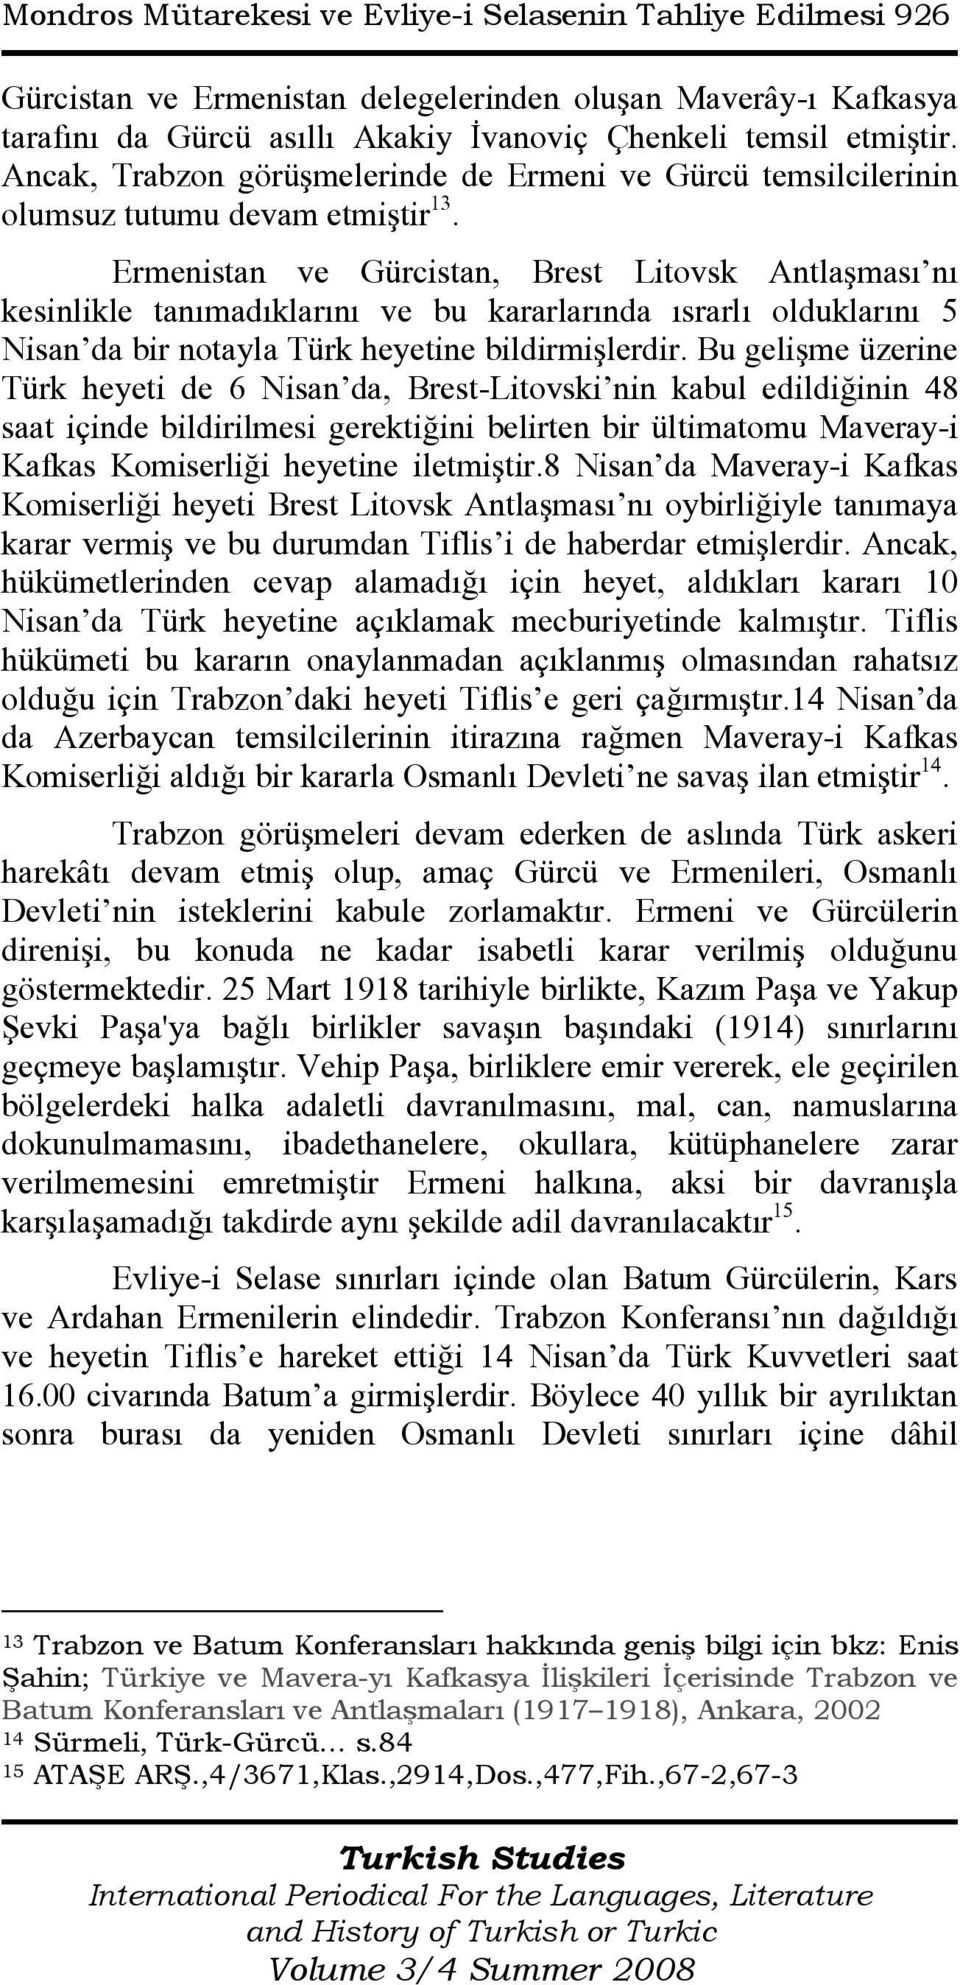 Ermenistan ve Gürcistan, Brest Litovsk Antlaşması nı kesinlikle tanımadıklarını ve bu kararlarında ısrarlı olduklarını 5 Nisan da bir notayla Türk heyetine bildirmişlerdir.